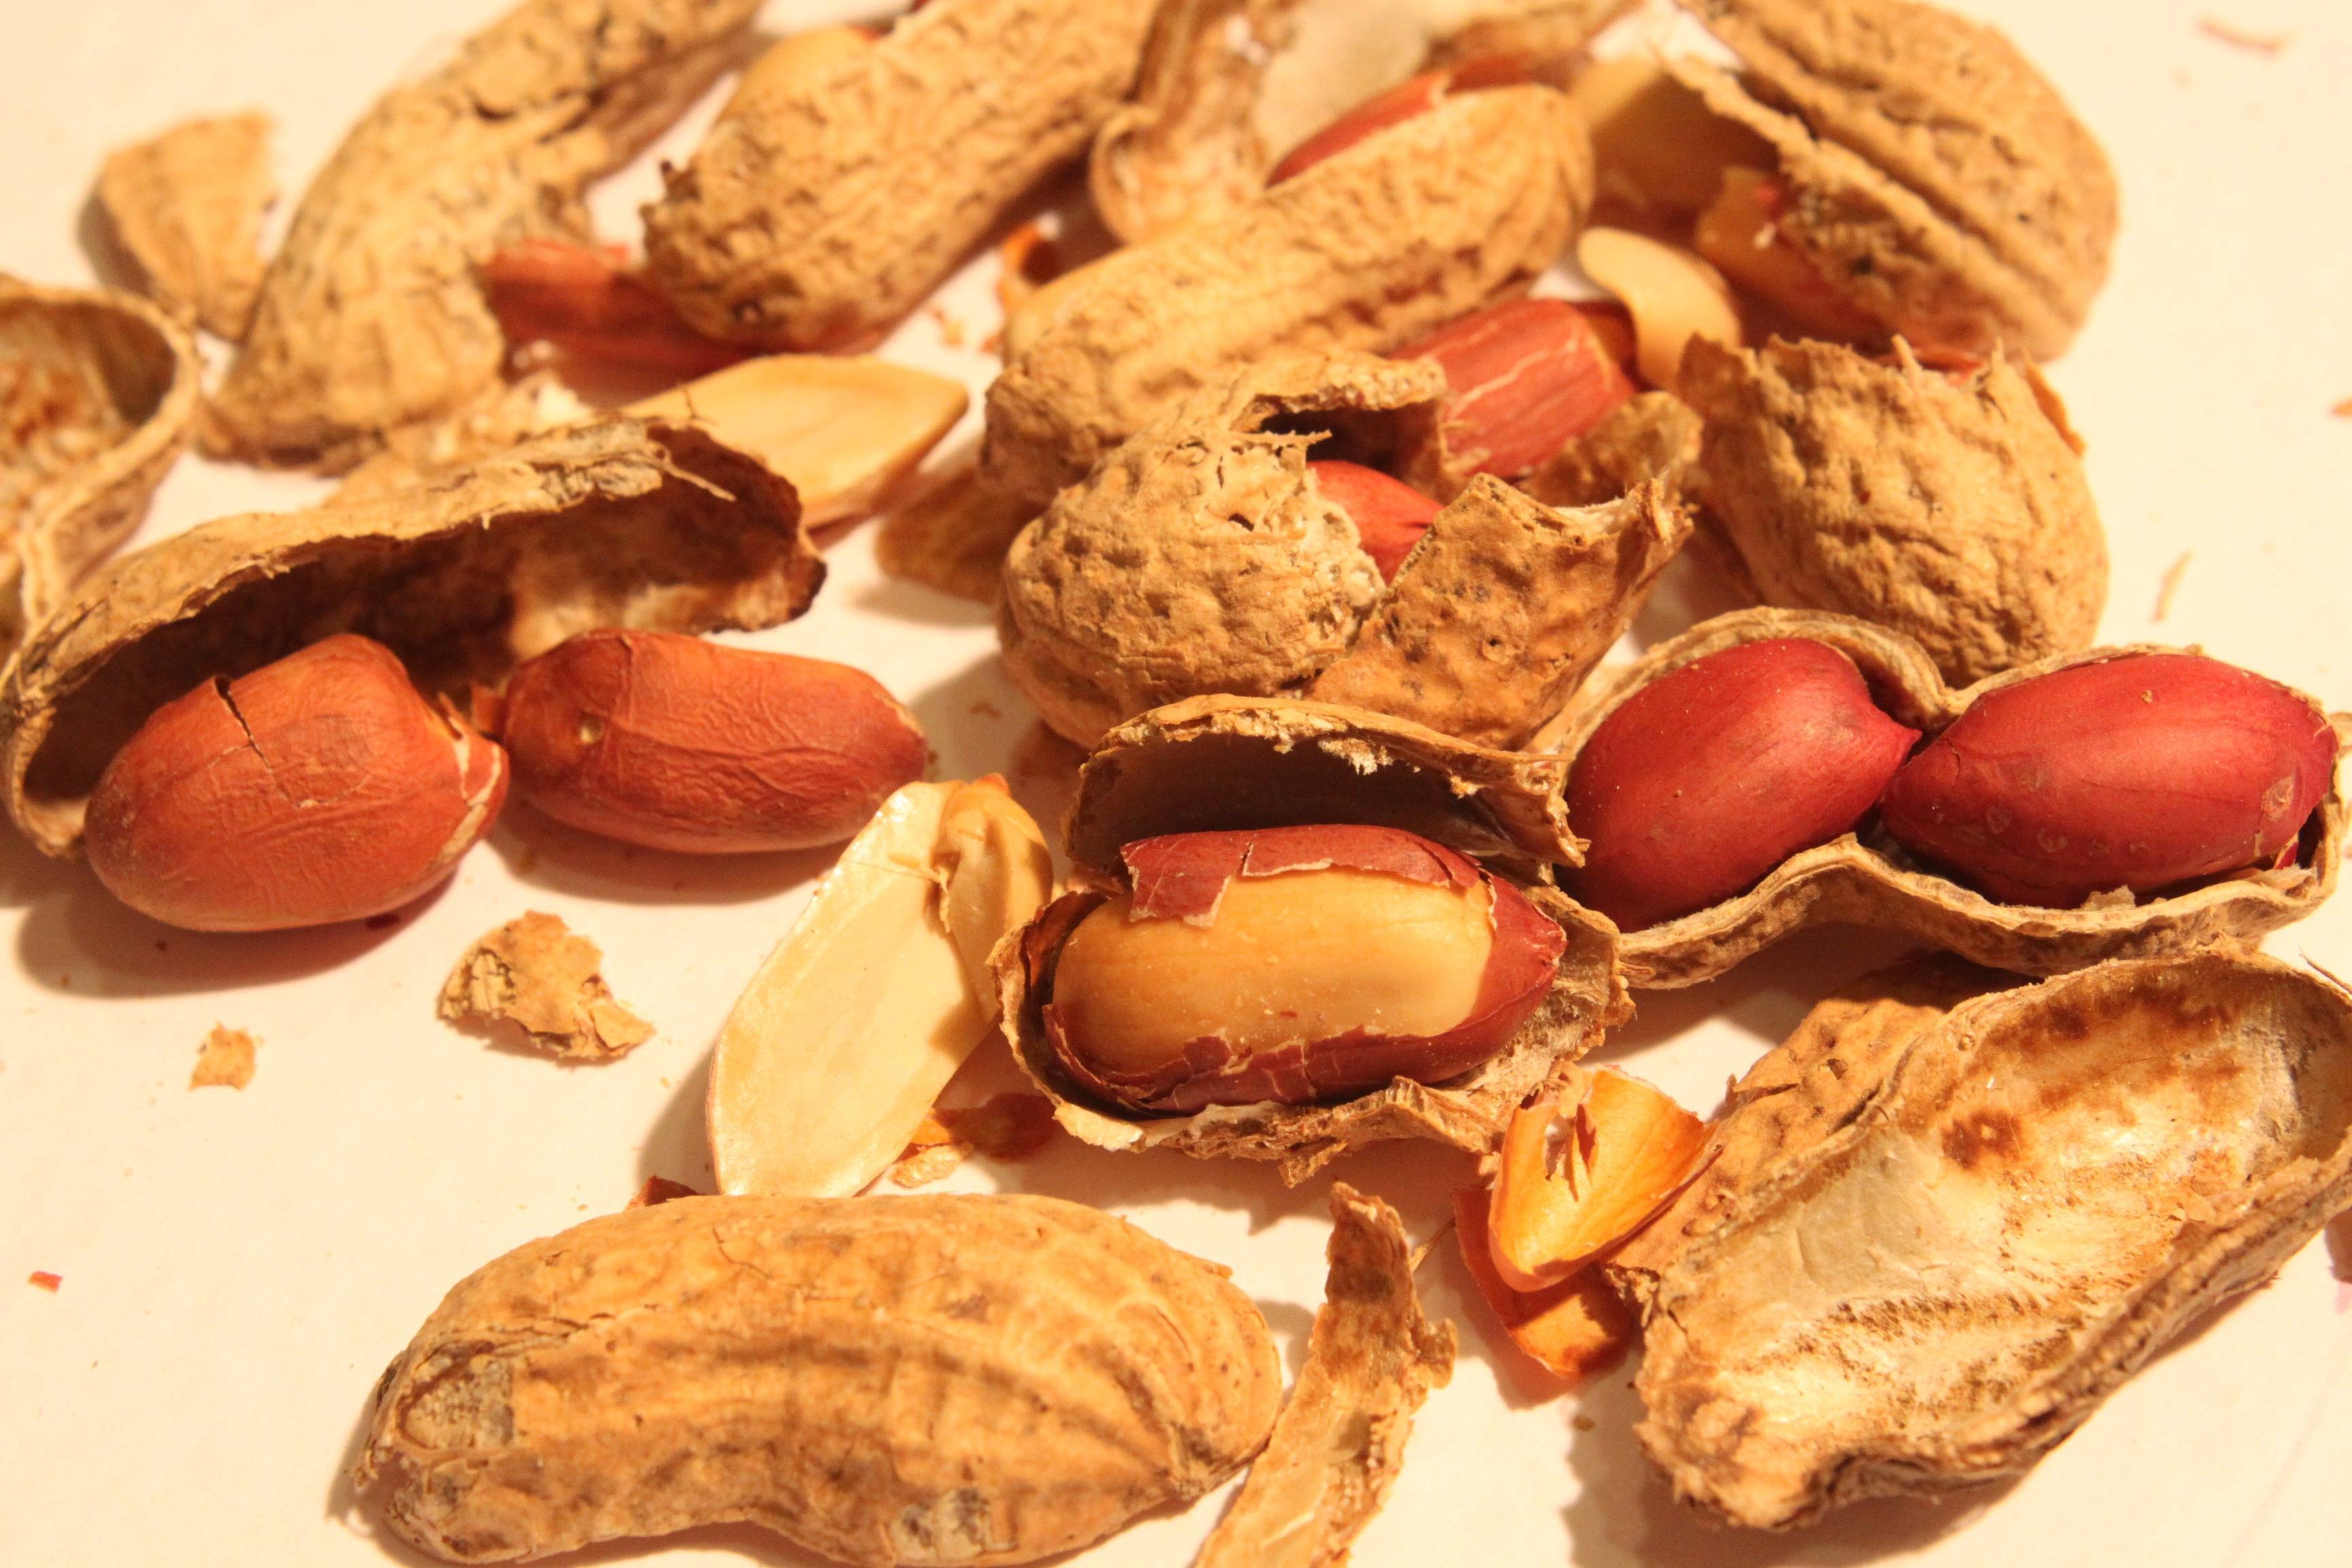 Можно ли собакам орехи: грецкие, макадамия, кешью, арахис